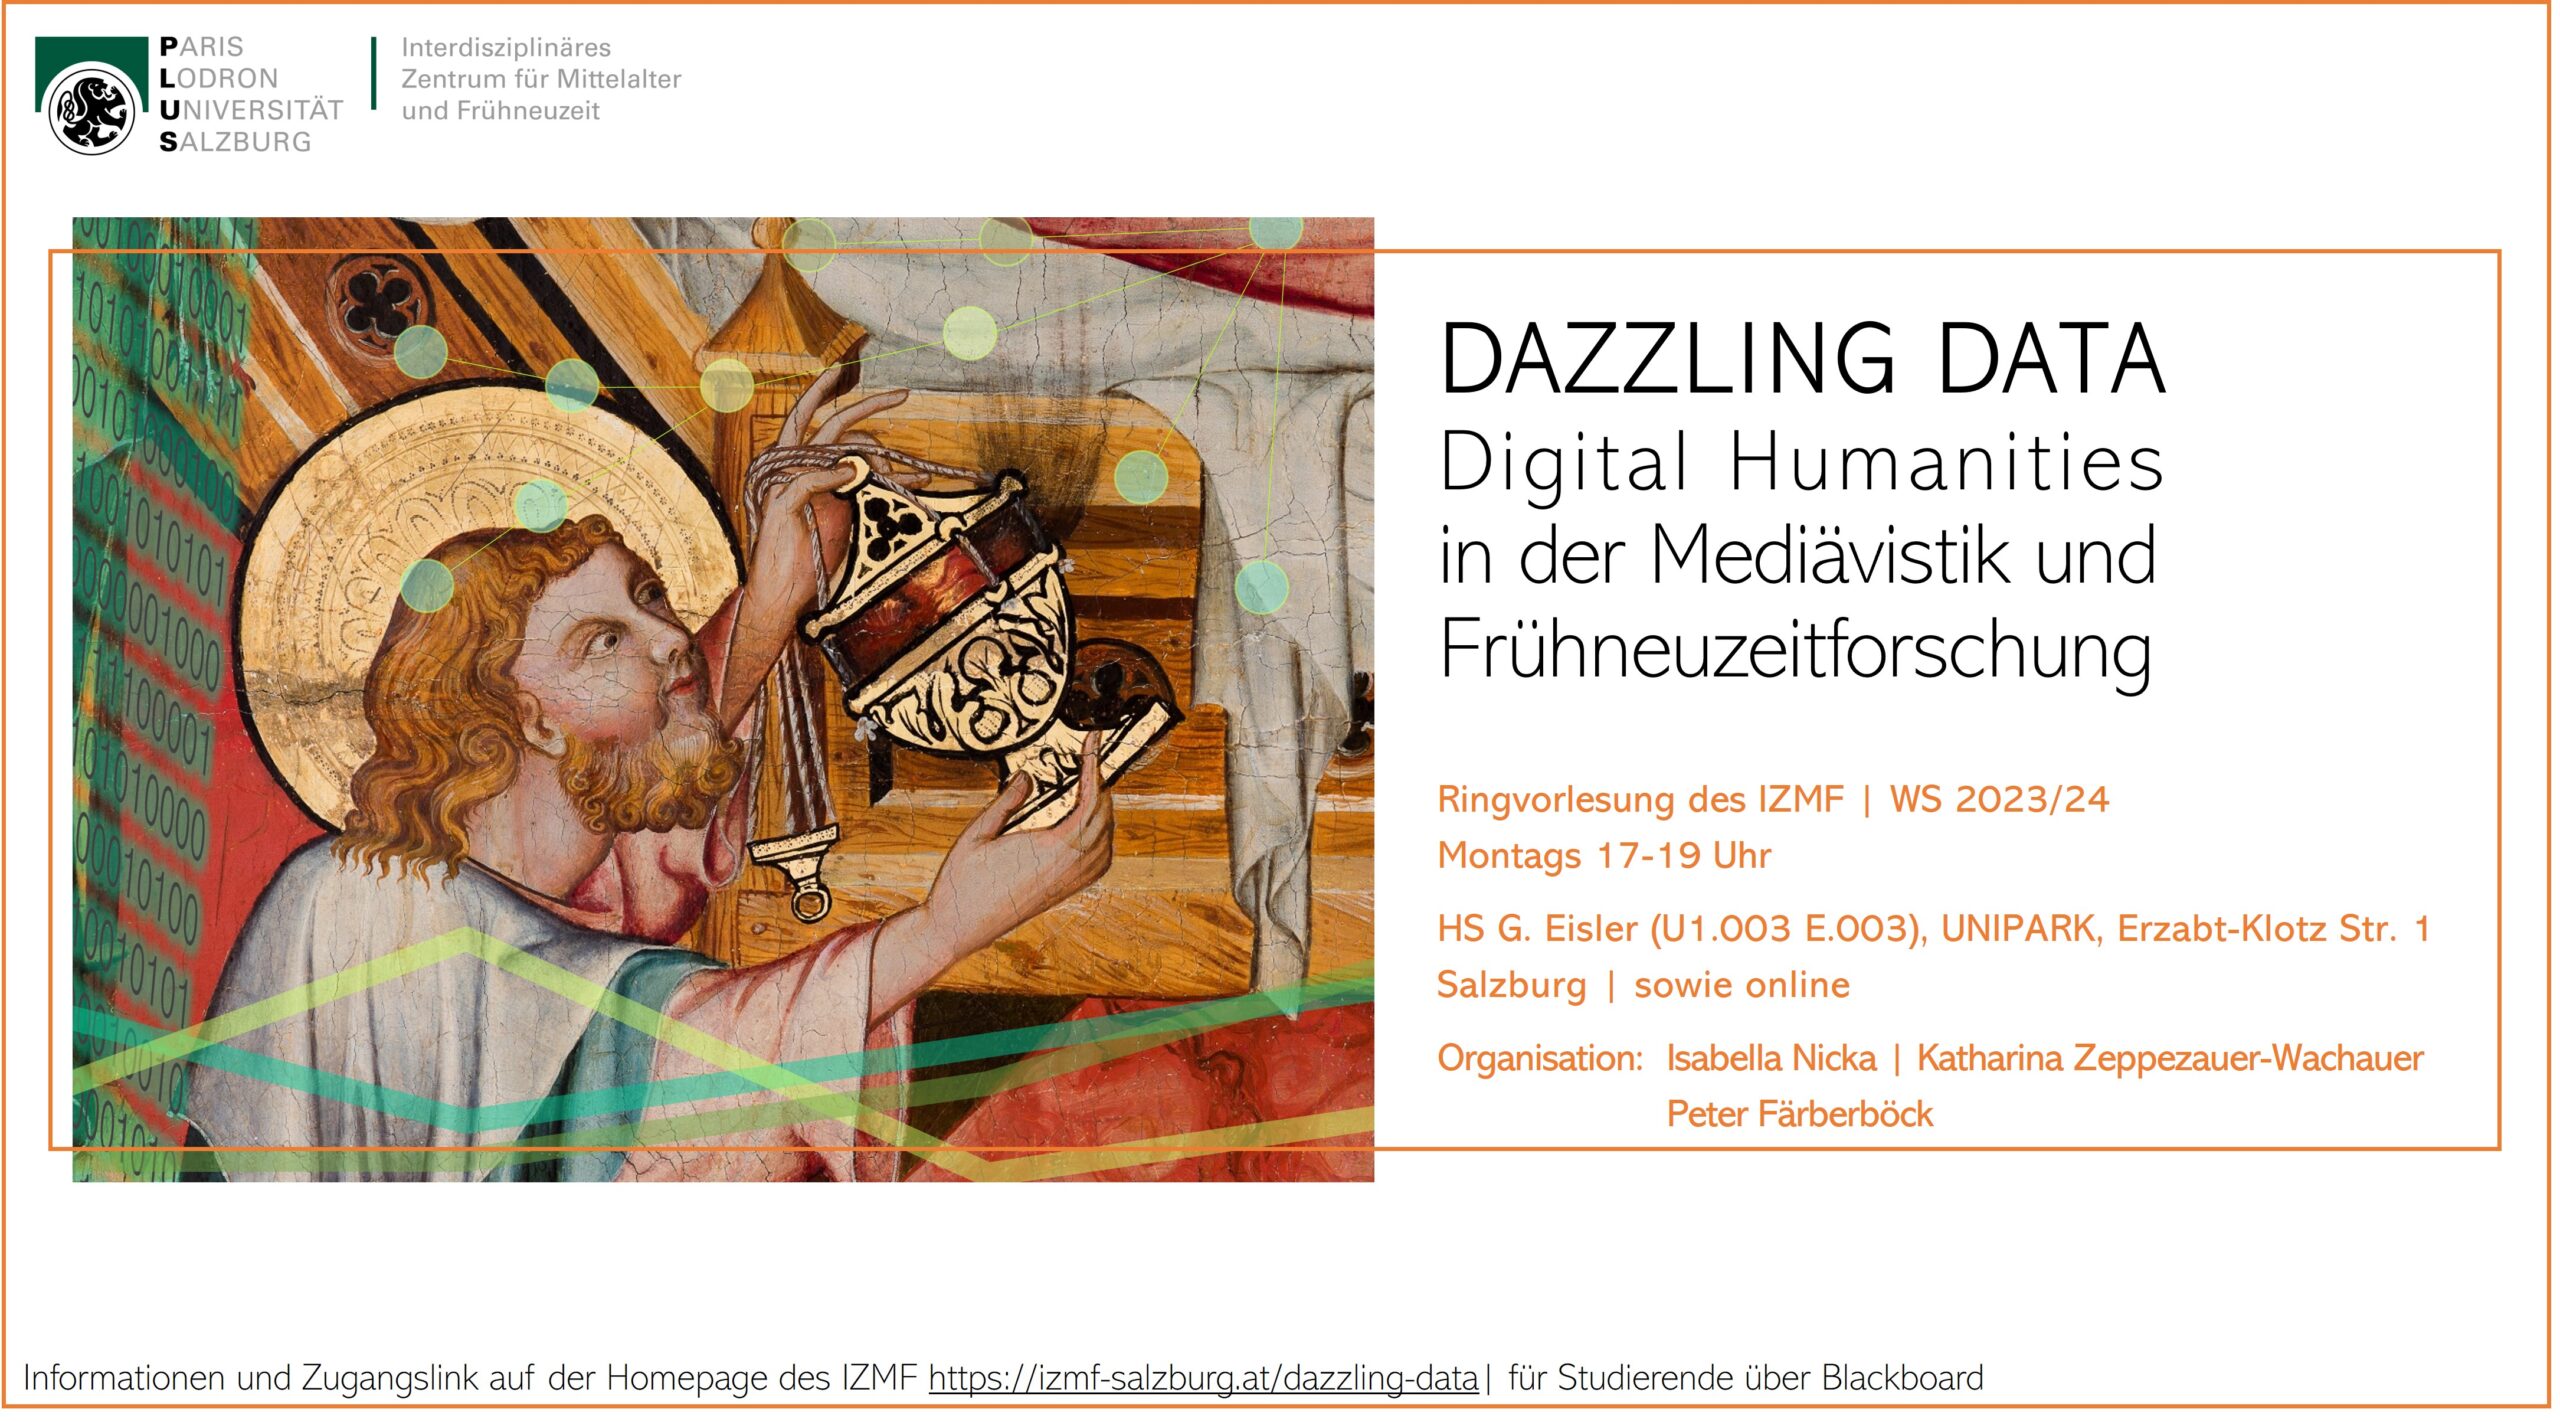 Dazzling Data: Digital Humanities in Medieval & Early Modern Studies